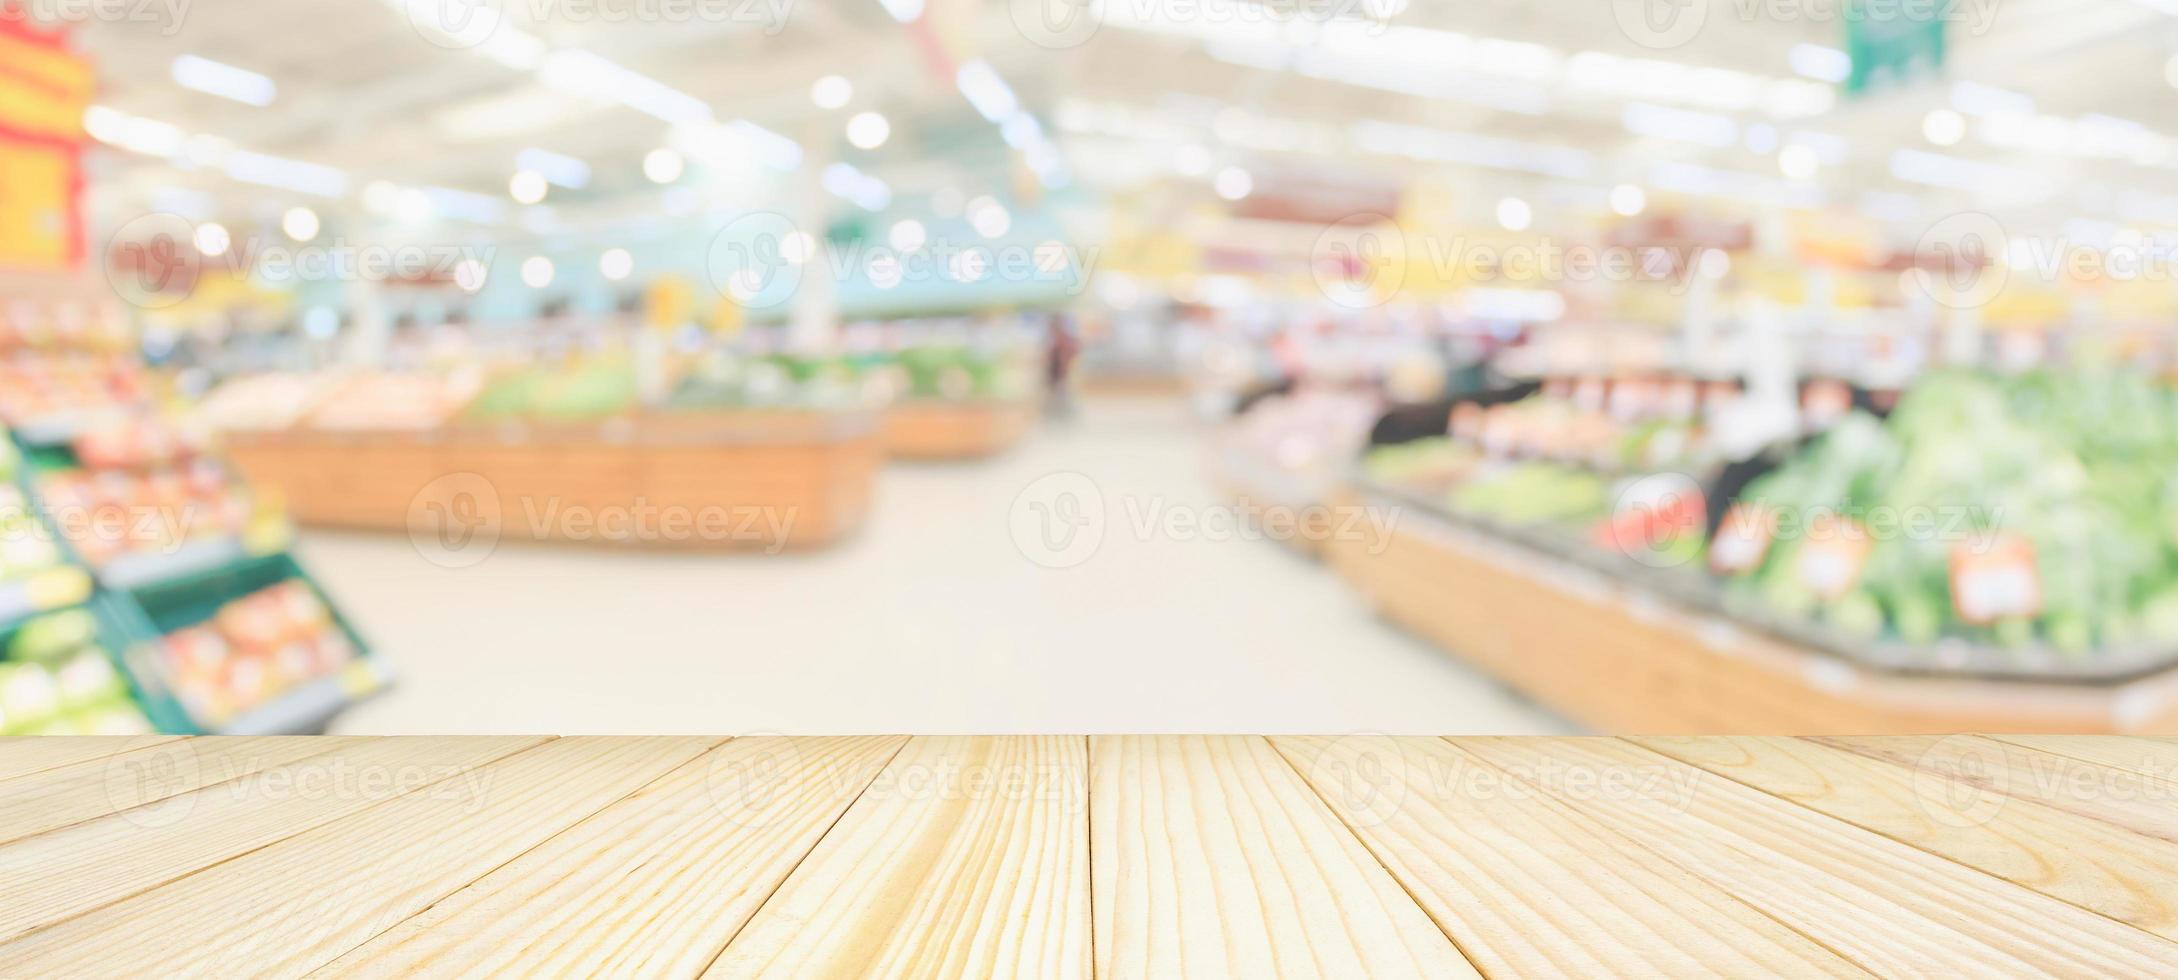 Holztischplatte mit Supermarkt-Lebensmittelgeschäft verschwommener, defokussierter Hintergrund mit Bokeh-Licht für die Produktpräsentation foto